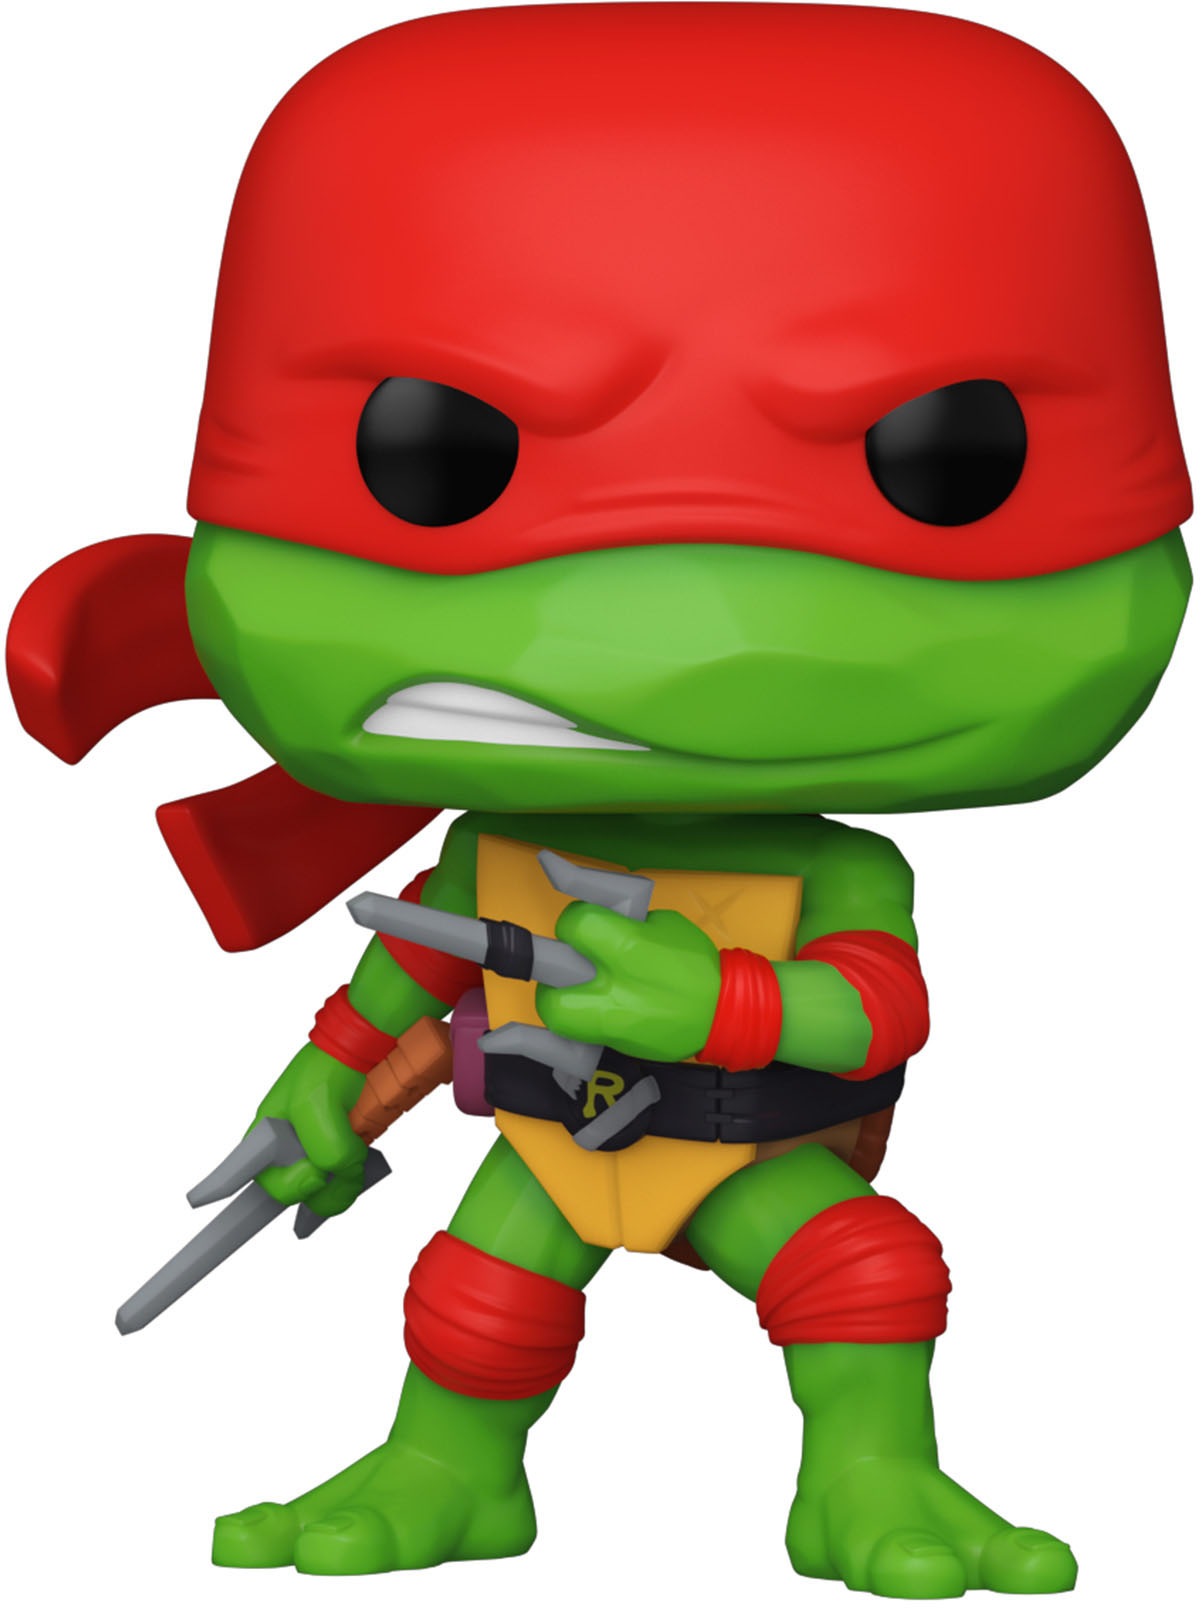 Donatello Funko POP Movies Figure - Teenage Mutant Ninja Turtles 2